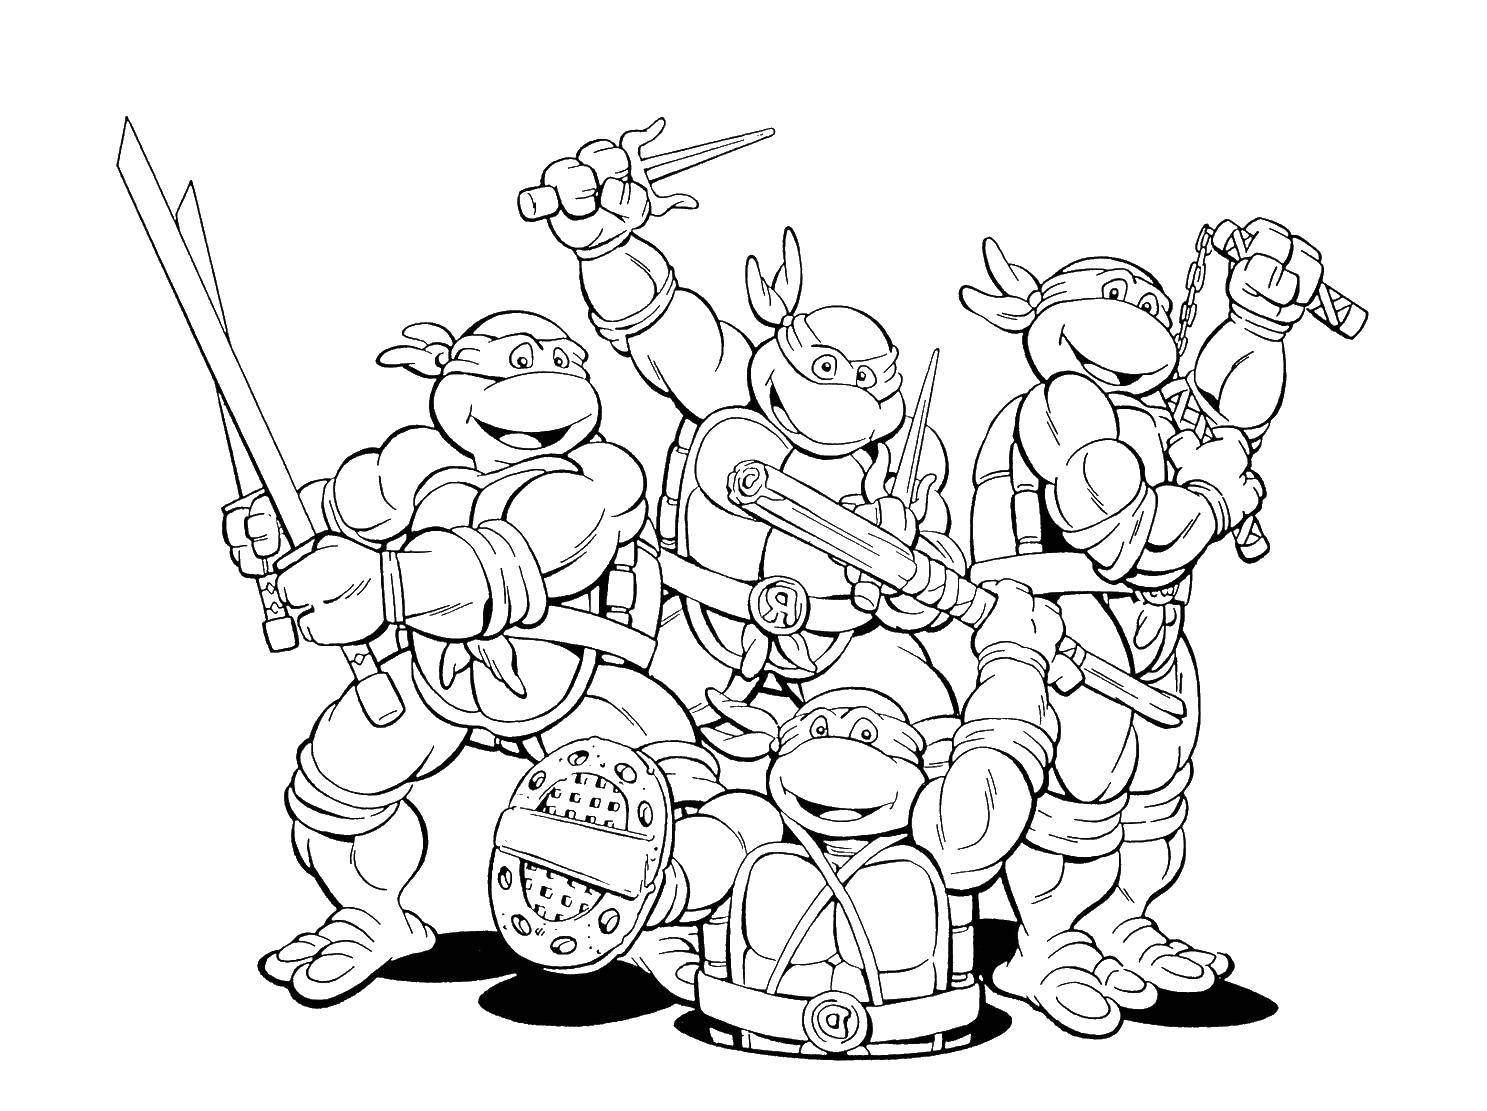 Coloring All teenage mutant ninja turtles. Category teenage mutant ninja turtles. Tags:  cartoon ninja turtles.